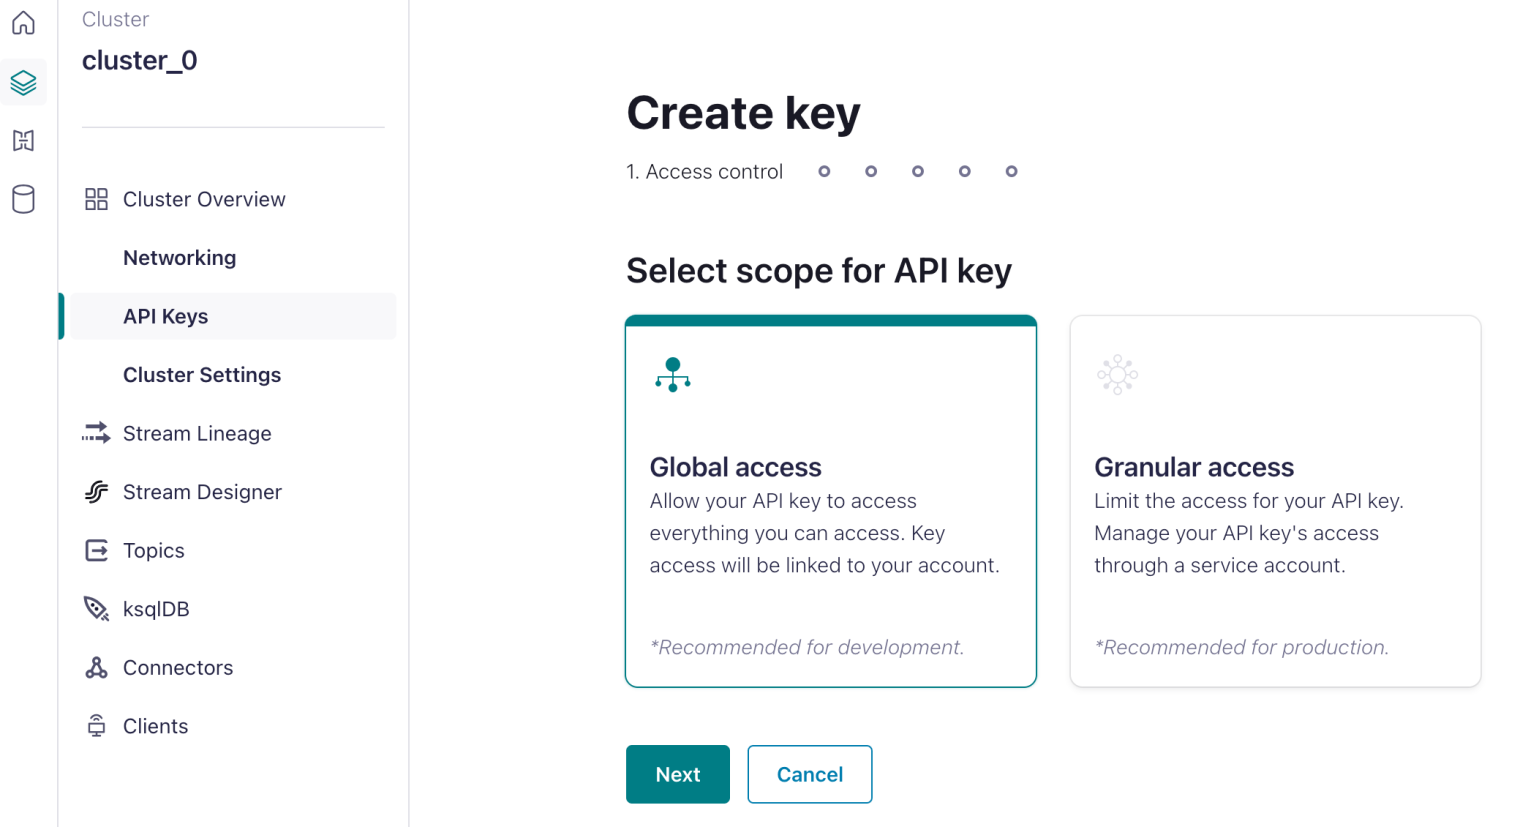 Generate an API Key